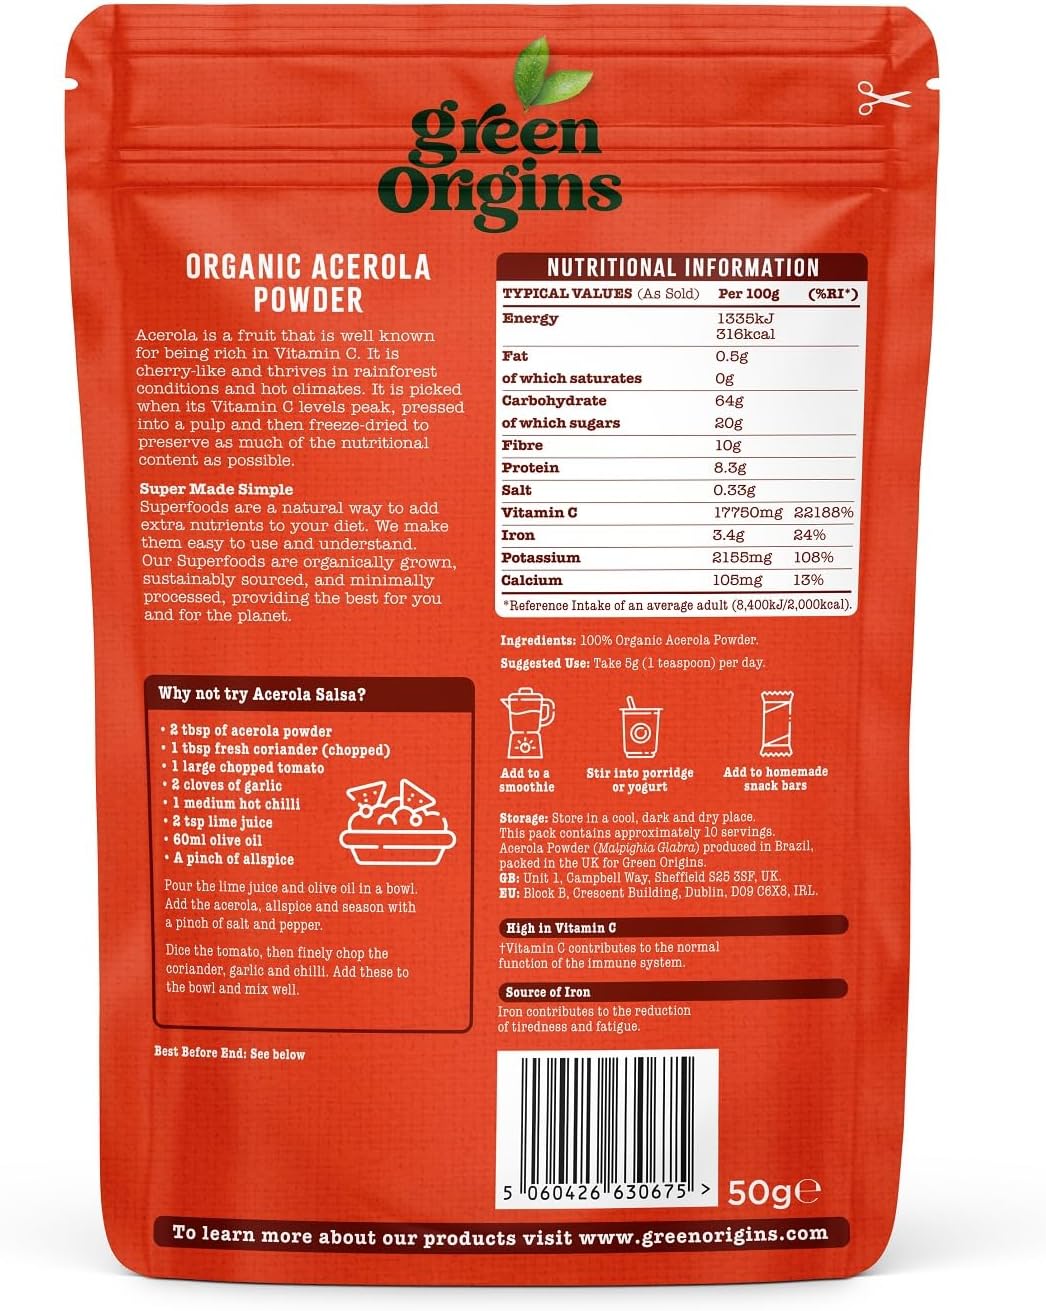 Green Origins Organic Acerola Powder, Raw 50g

